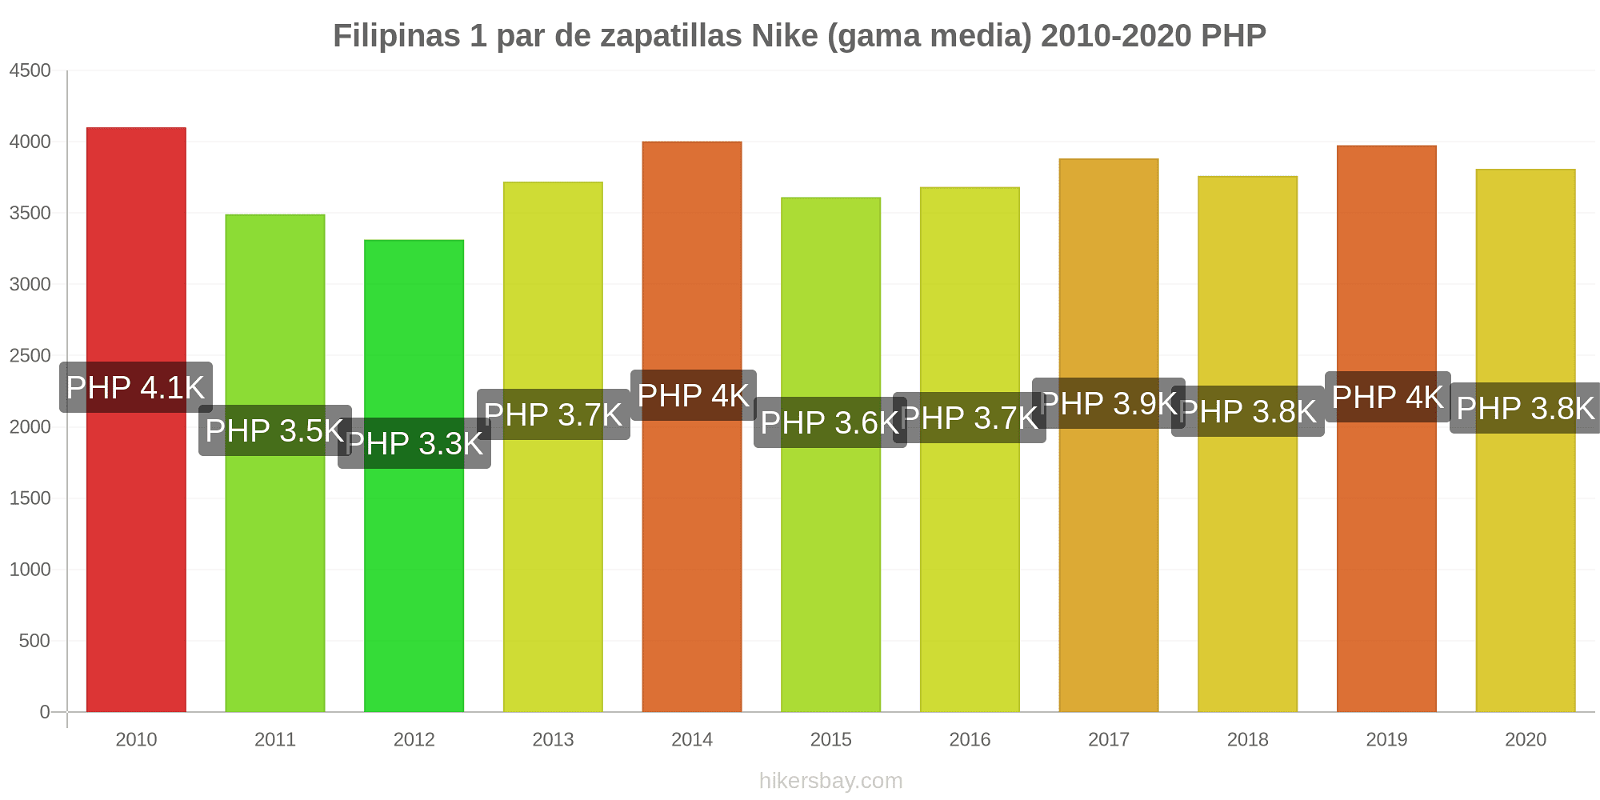 Filipinas cambios de precios 1 par de zapatillas Nike (gama media) hikersbay.com